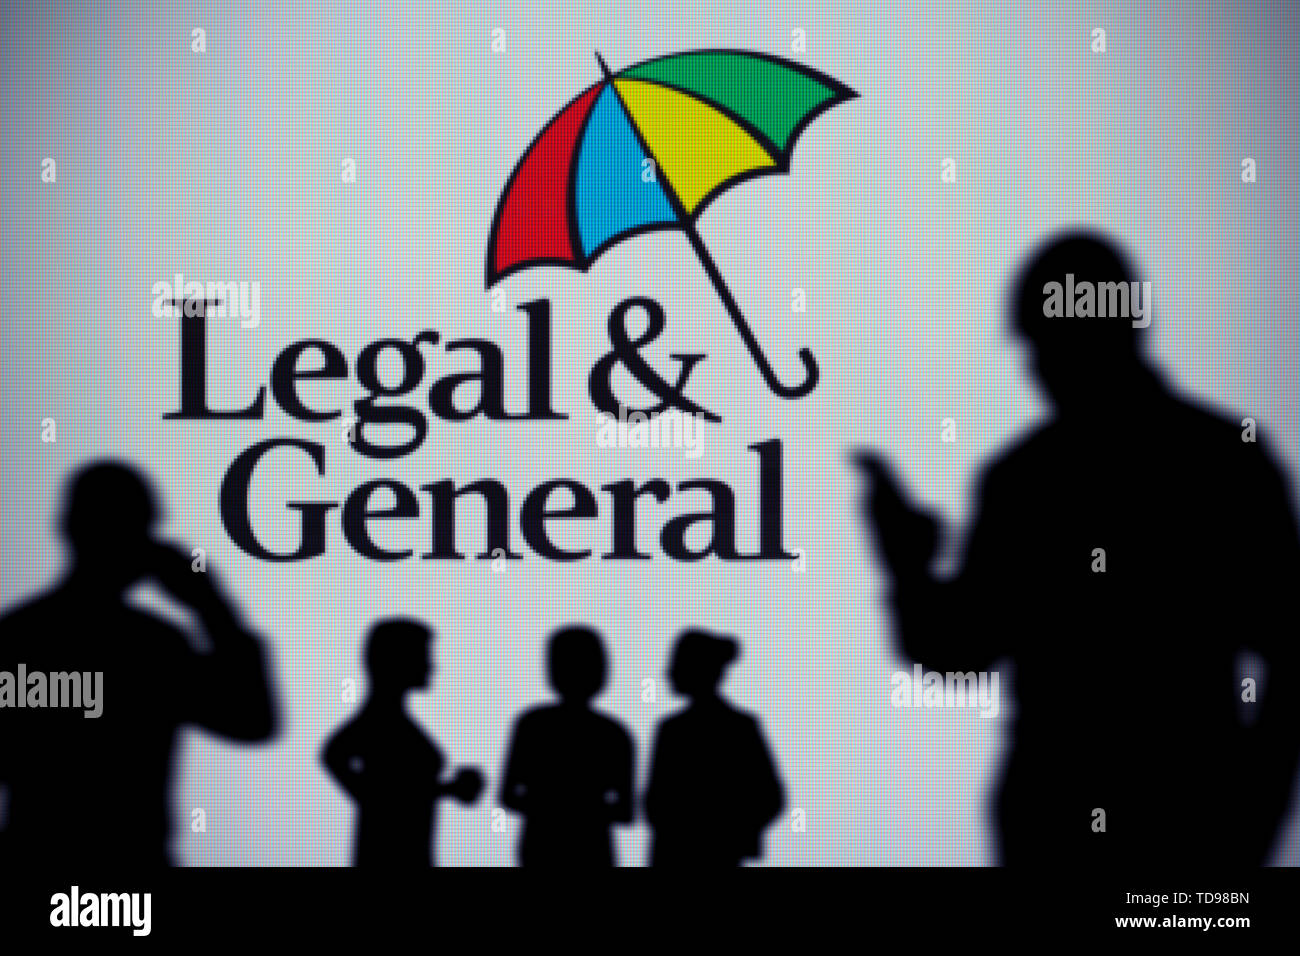 Die rechtlichen und allgemeinen Logo ist auf einen LED-Bildschirm im Hintergrund, während eine Silhouette Person ein Smartphone verwendet (Redaktionelle Nutzung). Stockfoto